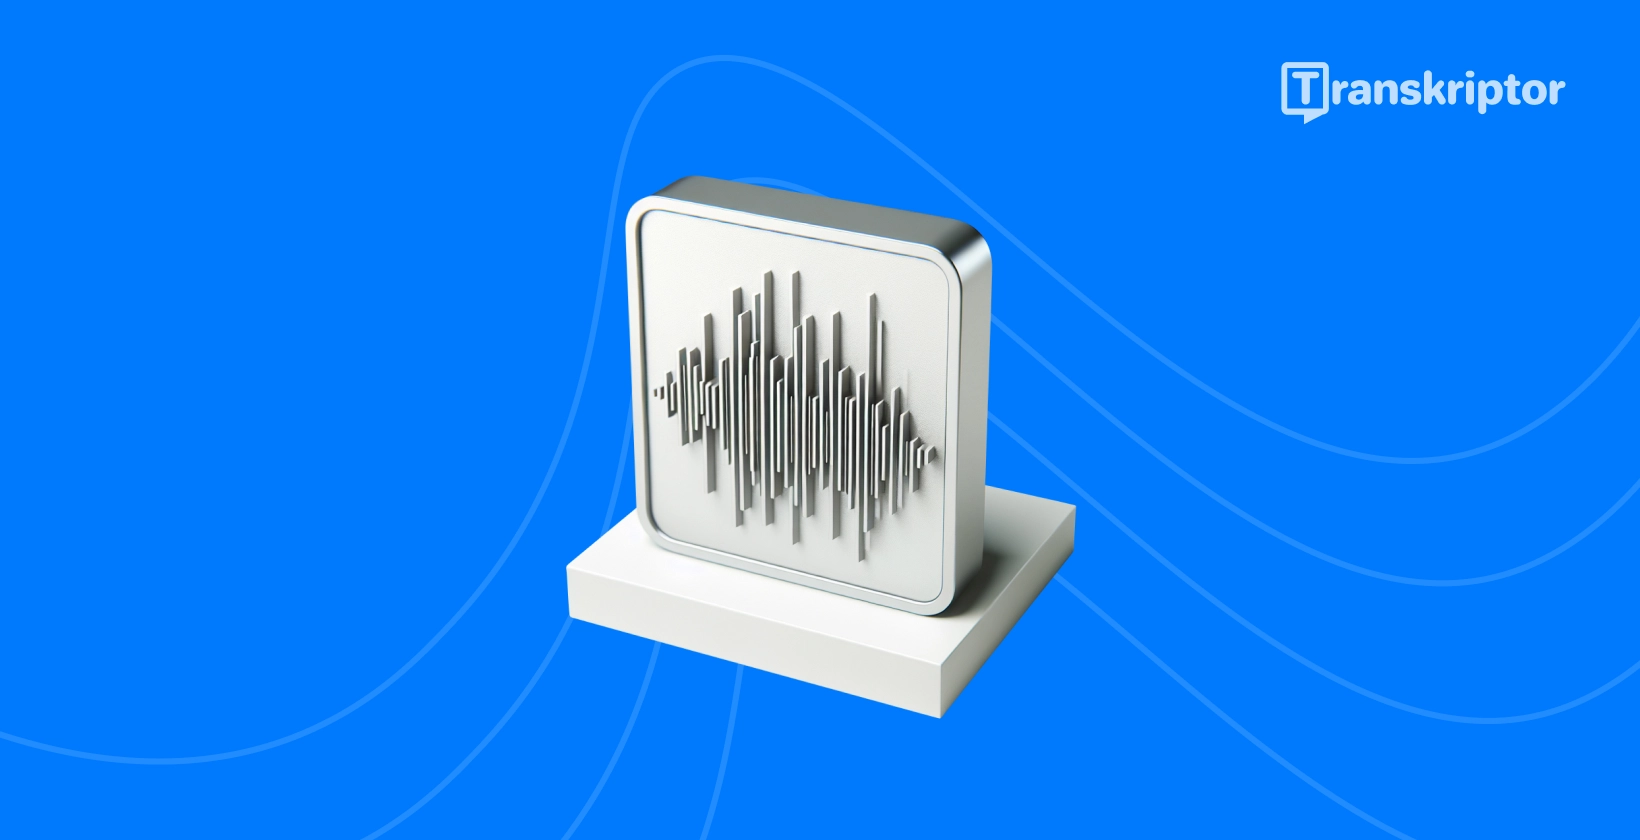 Ilustrácia zvukových vĺn na monitore predstavuje proces živého prepisu zvuku, ako je podrobne uvedené v príručke.